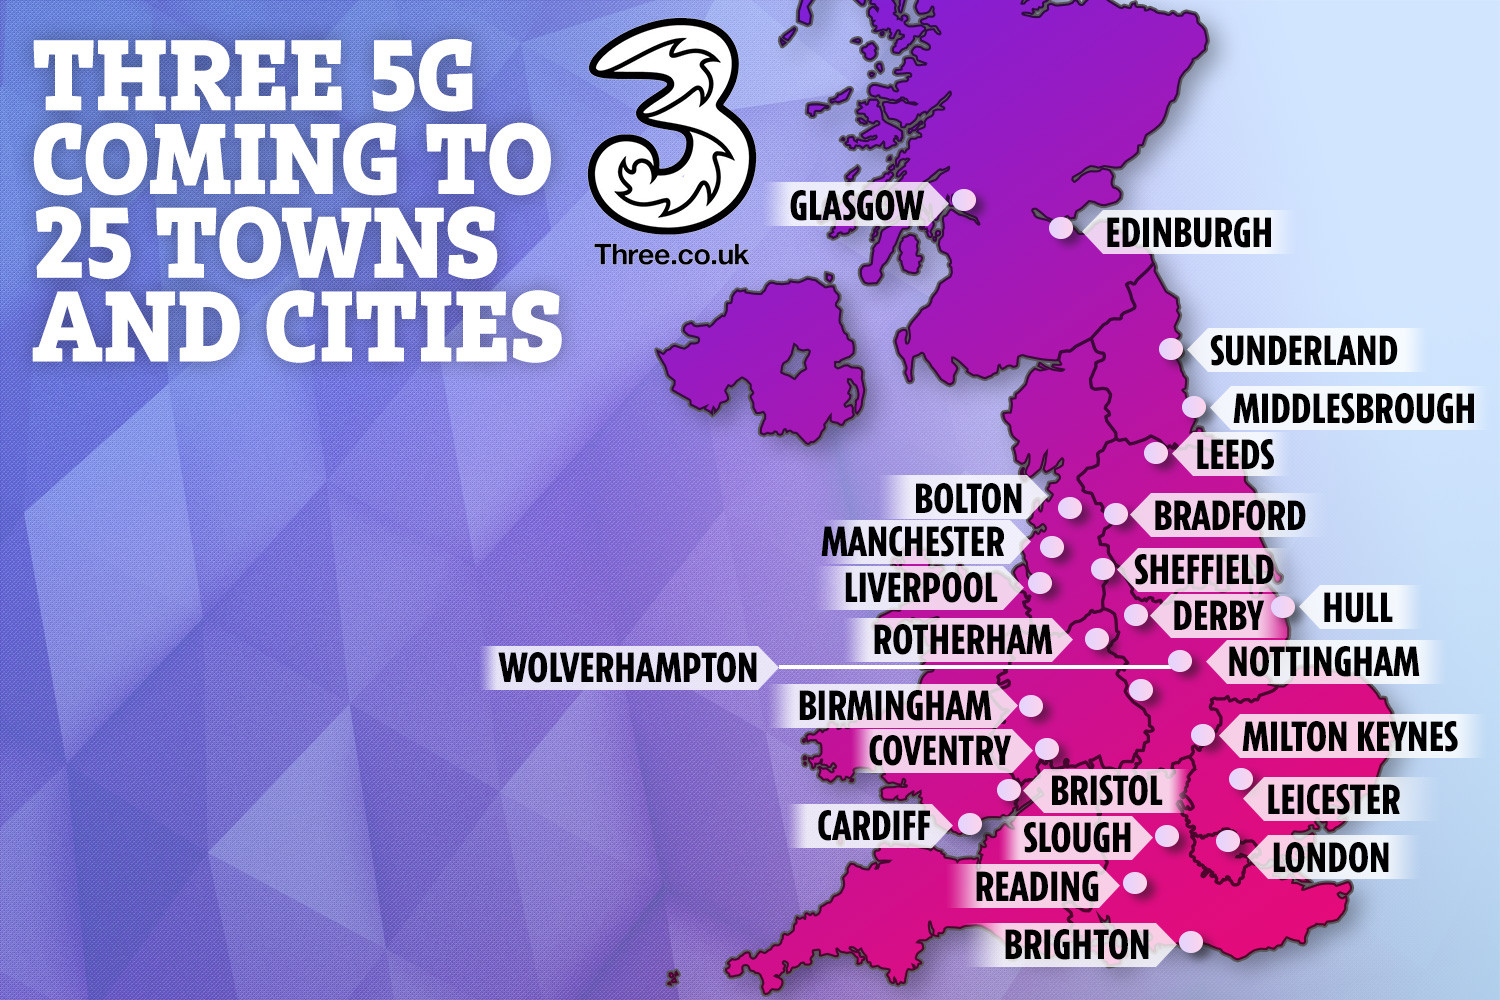  Sebanyak 25 kota di Inggris akan memiliki akses ke jaringan 5G Three pada akhir 2019